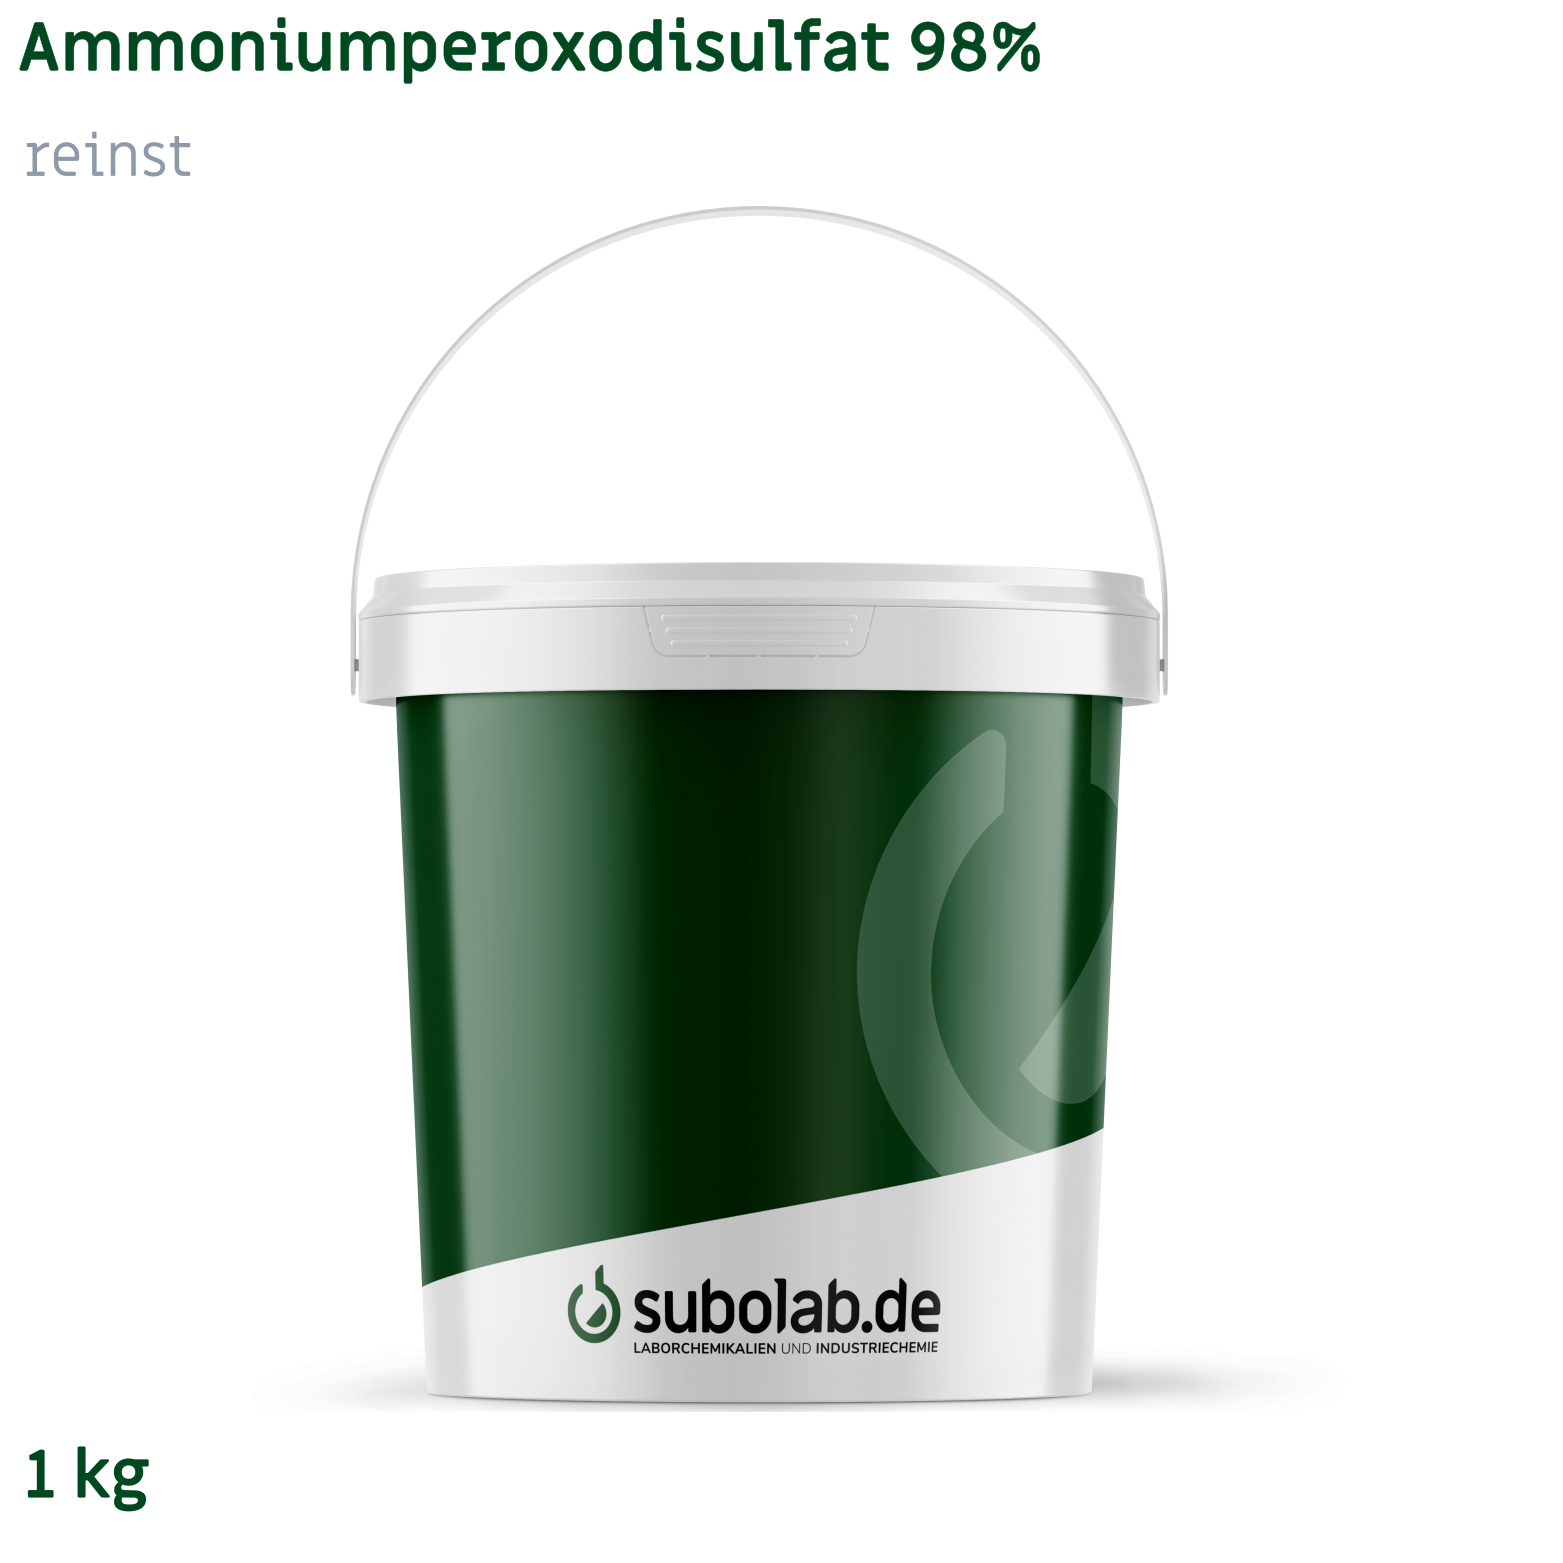 Bild von Ammoniumperoxodisulfat 98% reinst (1 kg)